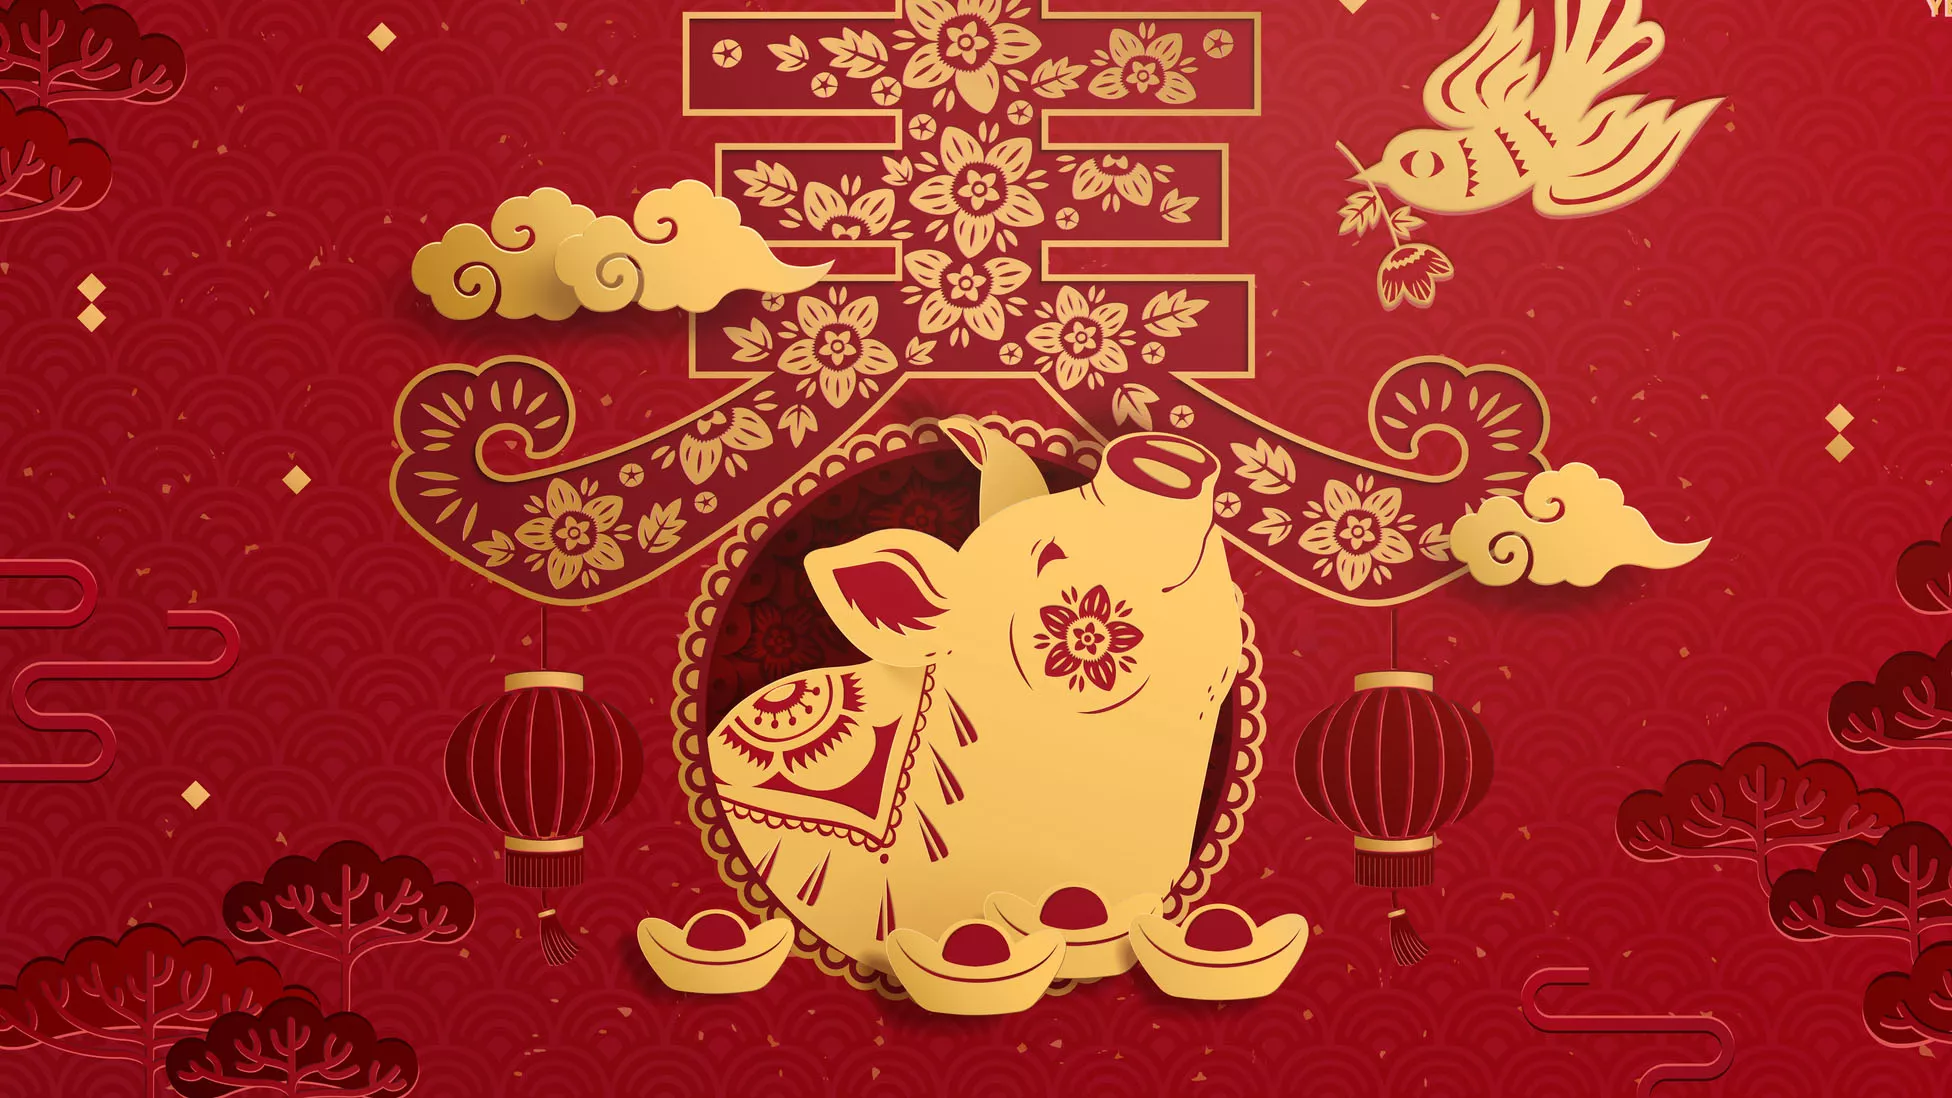 Sika on yksi eläinmerkki. Kiinalainen horoskooppi sisältää 12 horoskooppimerkkiä.